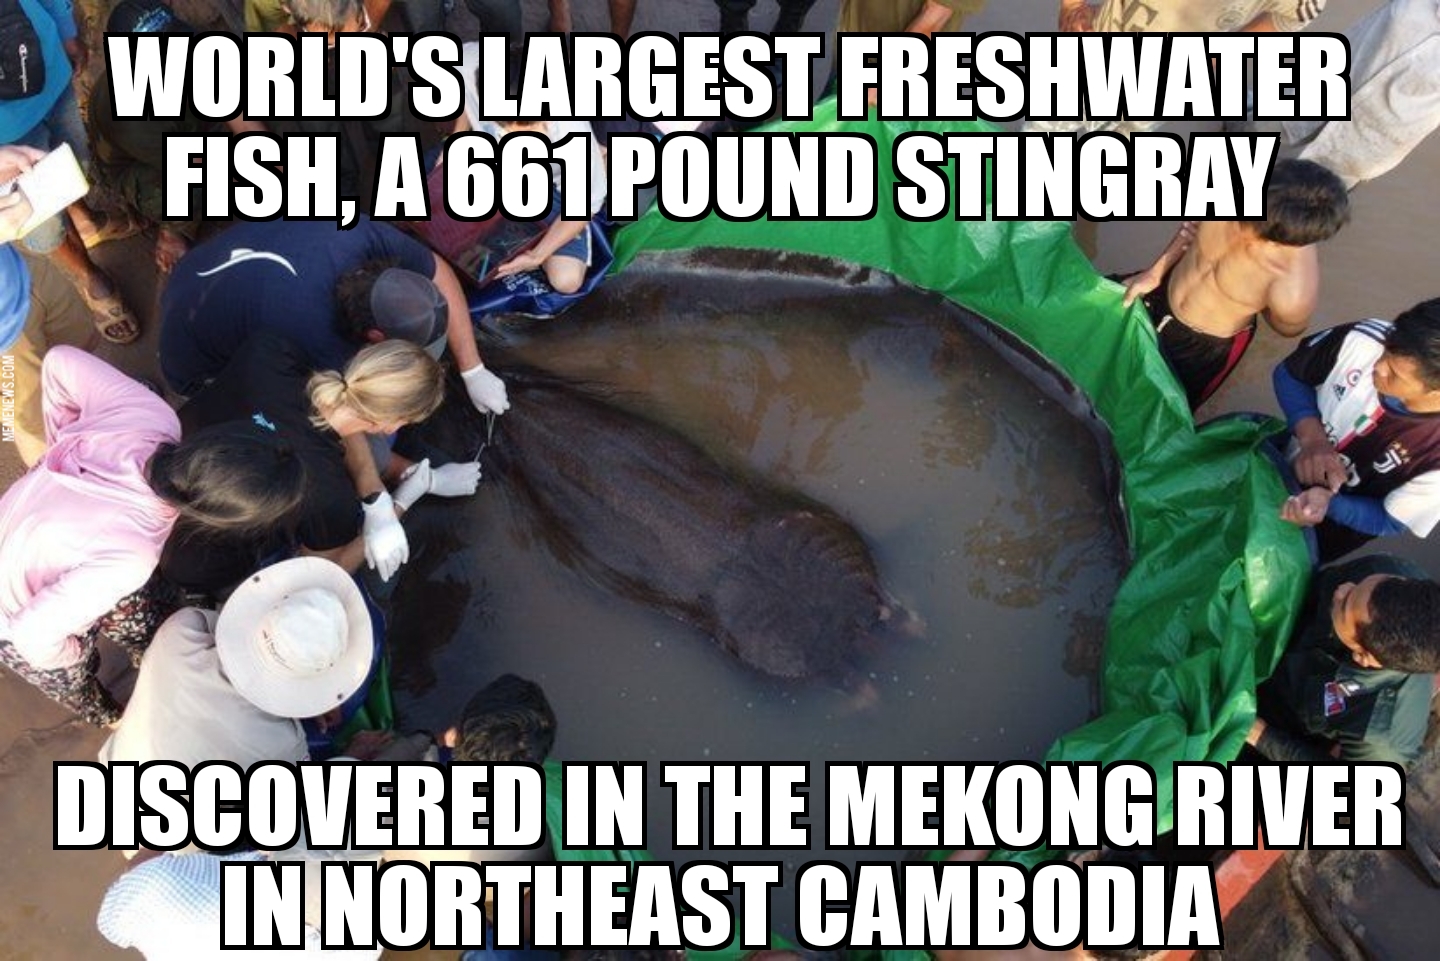 World’s largest freshwater fish